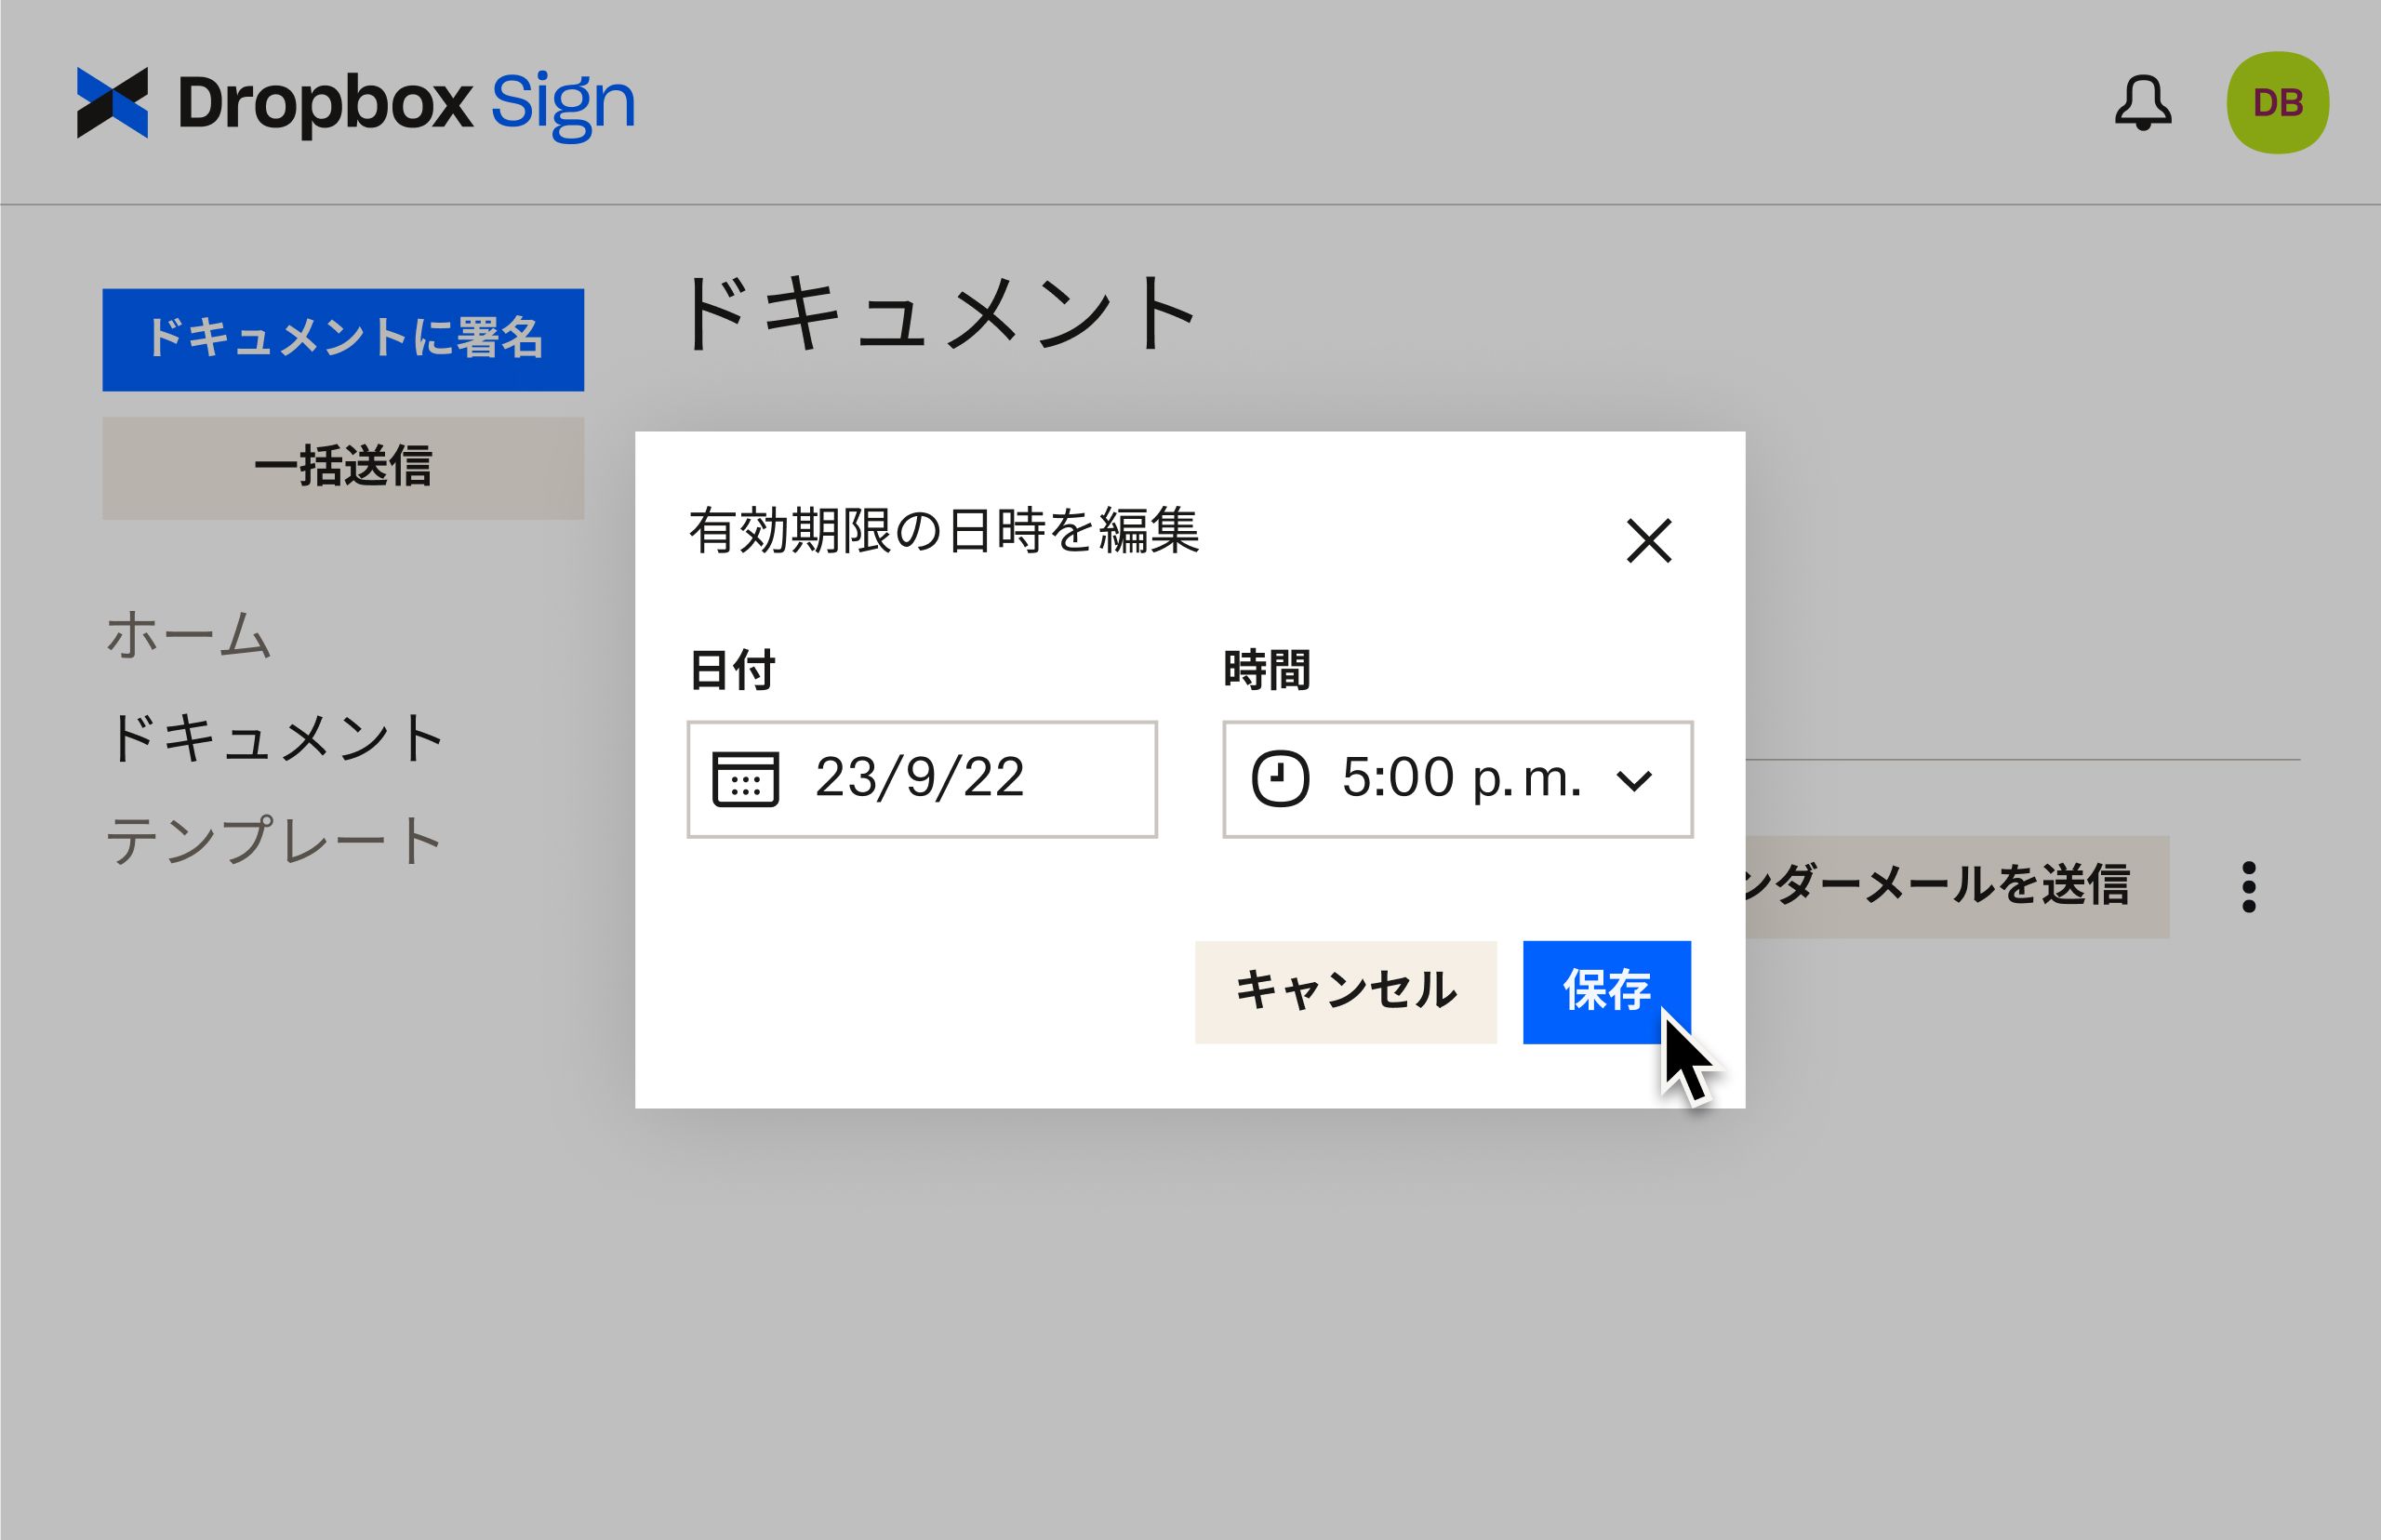 署名用ドキュメントを送信した後に有効期限を編集する方法を示す Dropbox Sign ユーザー インターフェース